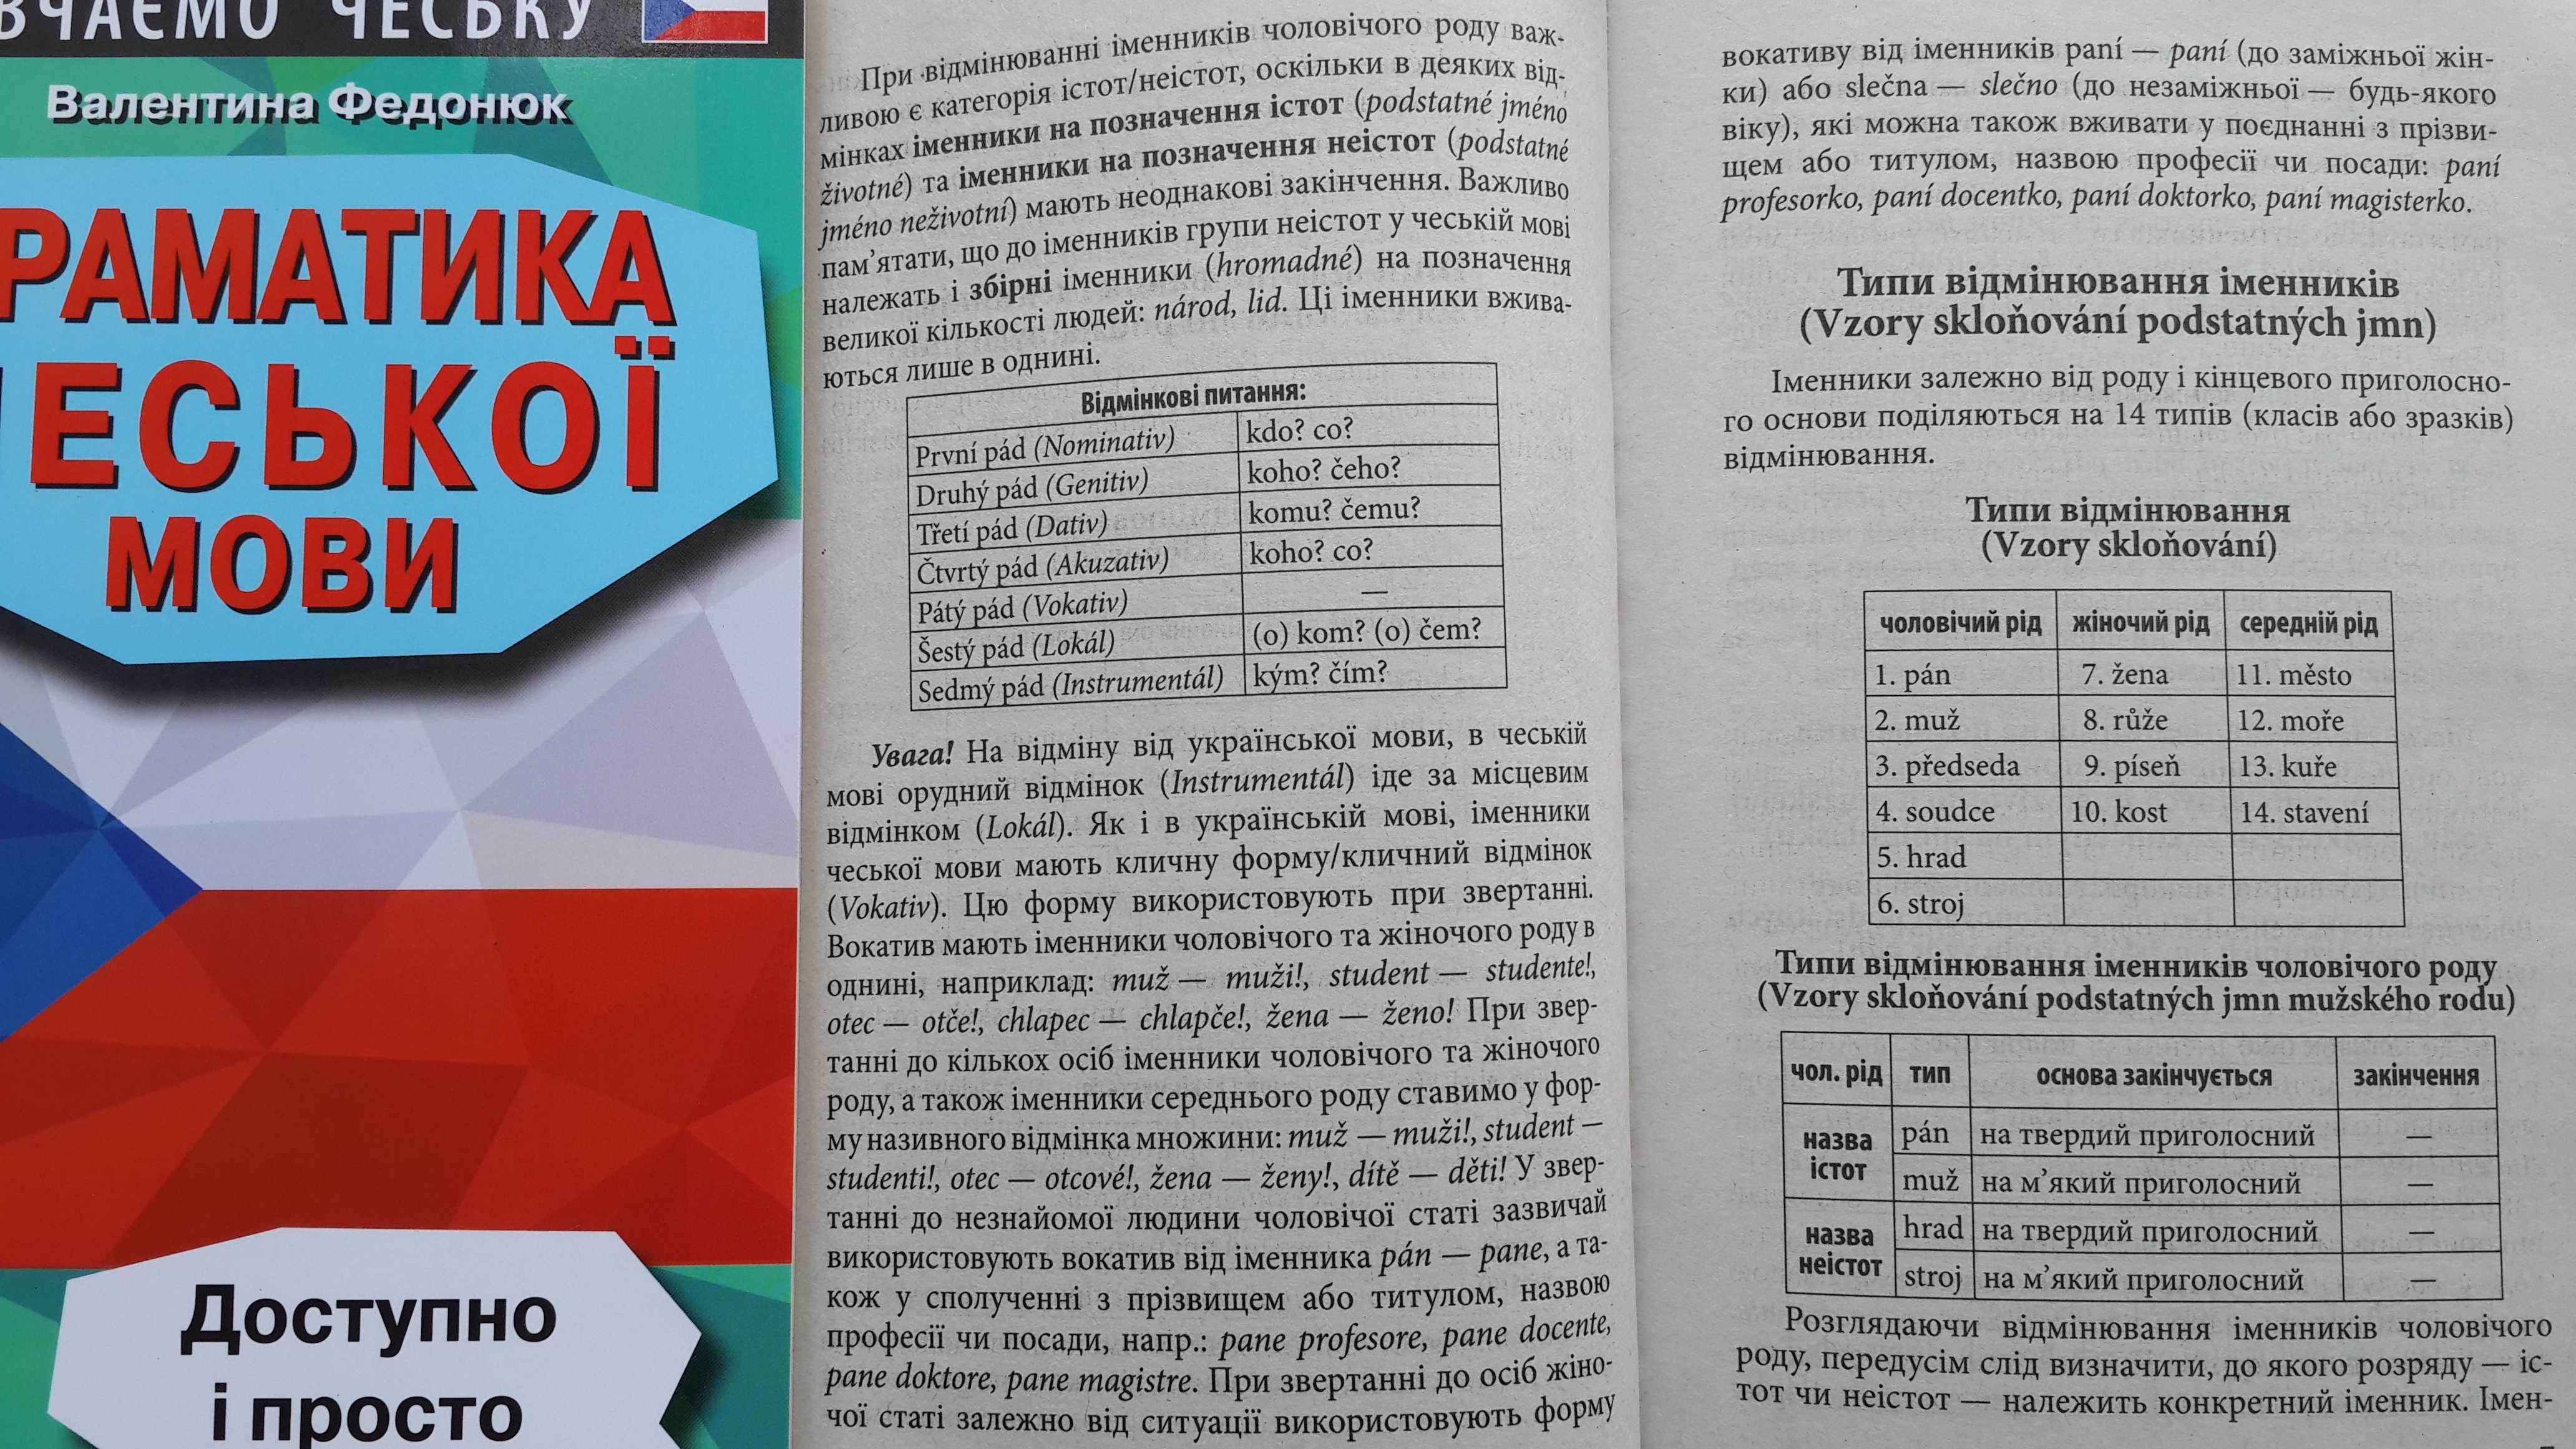 Граматика чеської мови доступно і просто Федонюк В. Арій